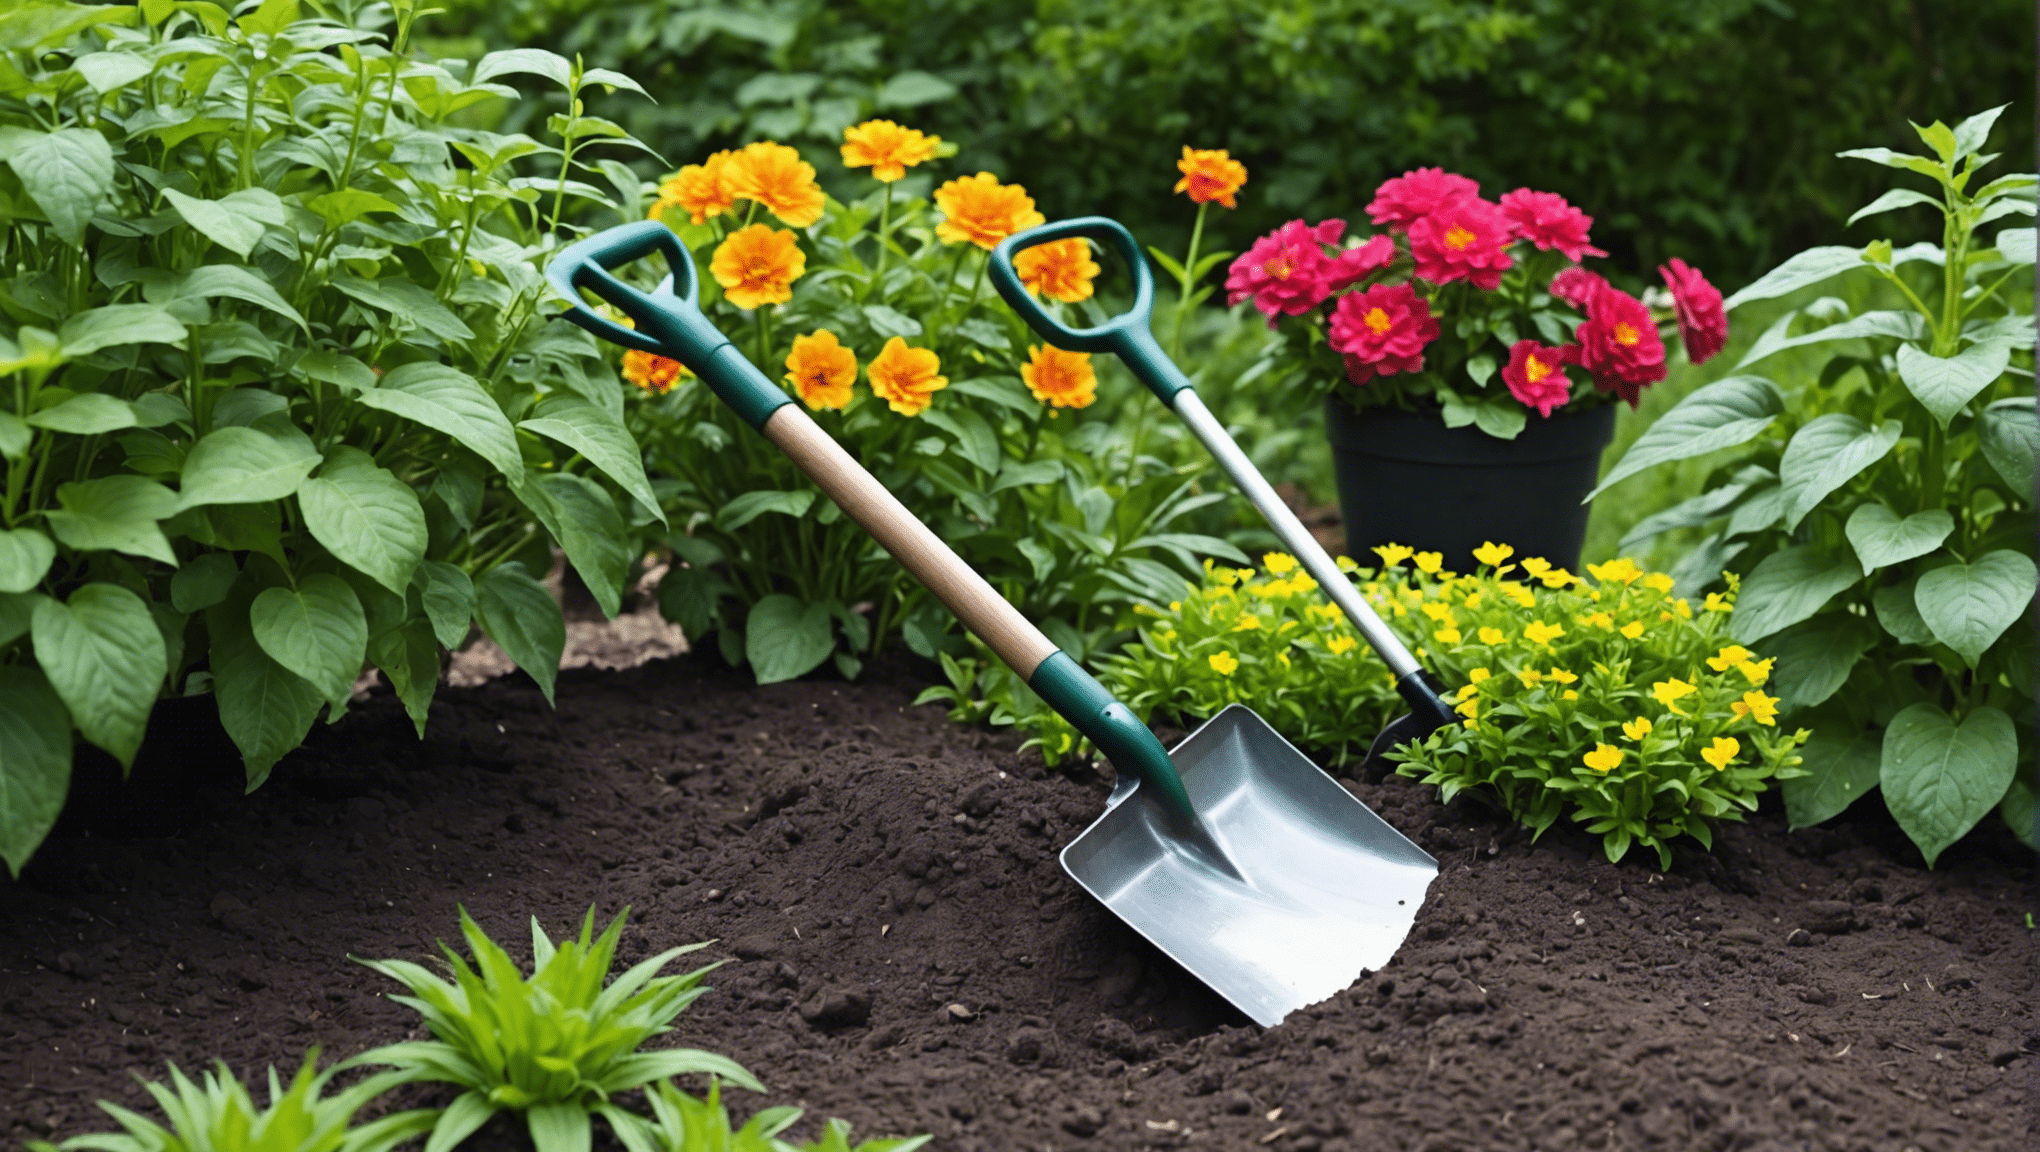 poiščite idealno majhno vrtno lopato za vse svoje vrtnarske potrebe z našo izbiro visokokakovostnih in vzdržljivih orodij.